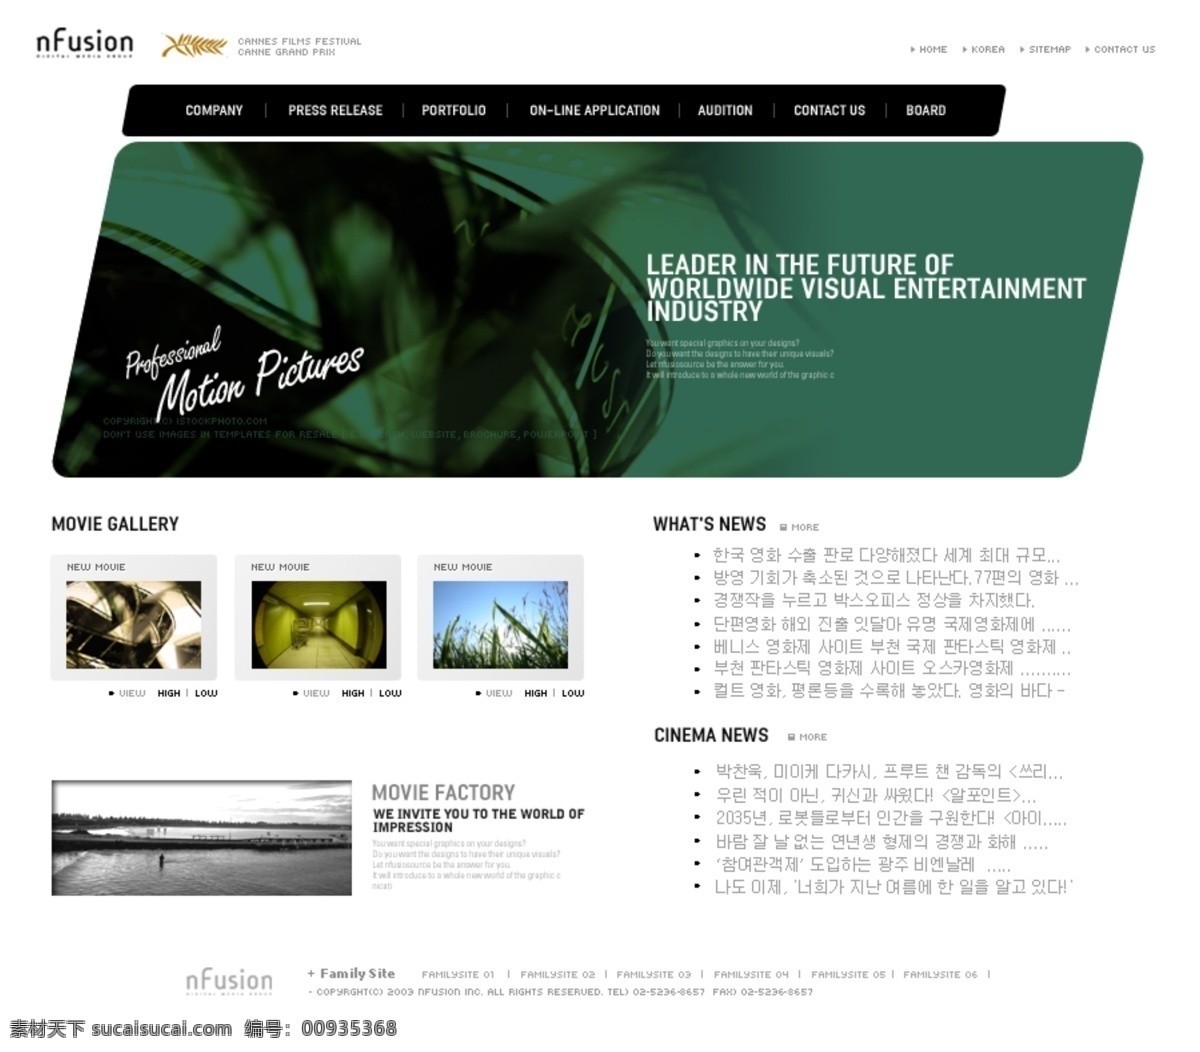 韩国 电影院 售票 网页模板 韩国风格 售票网页模板 网页素材